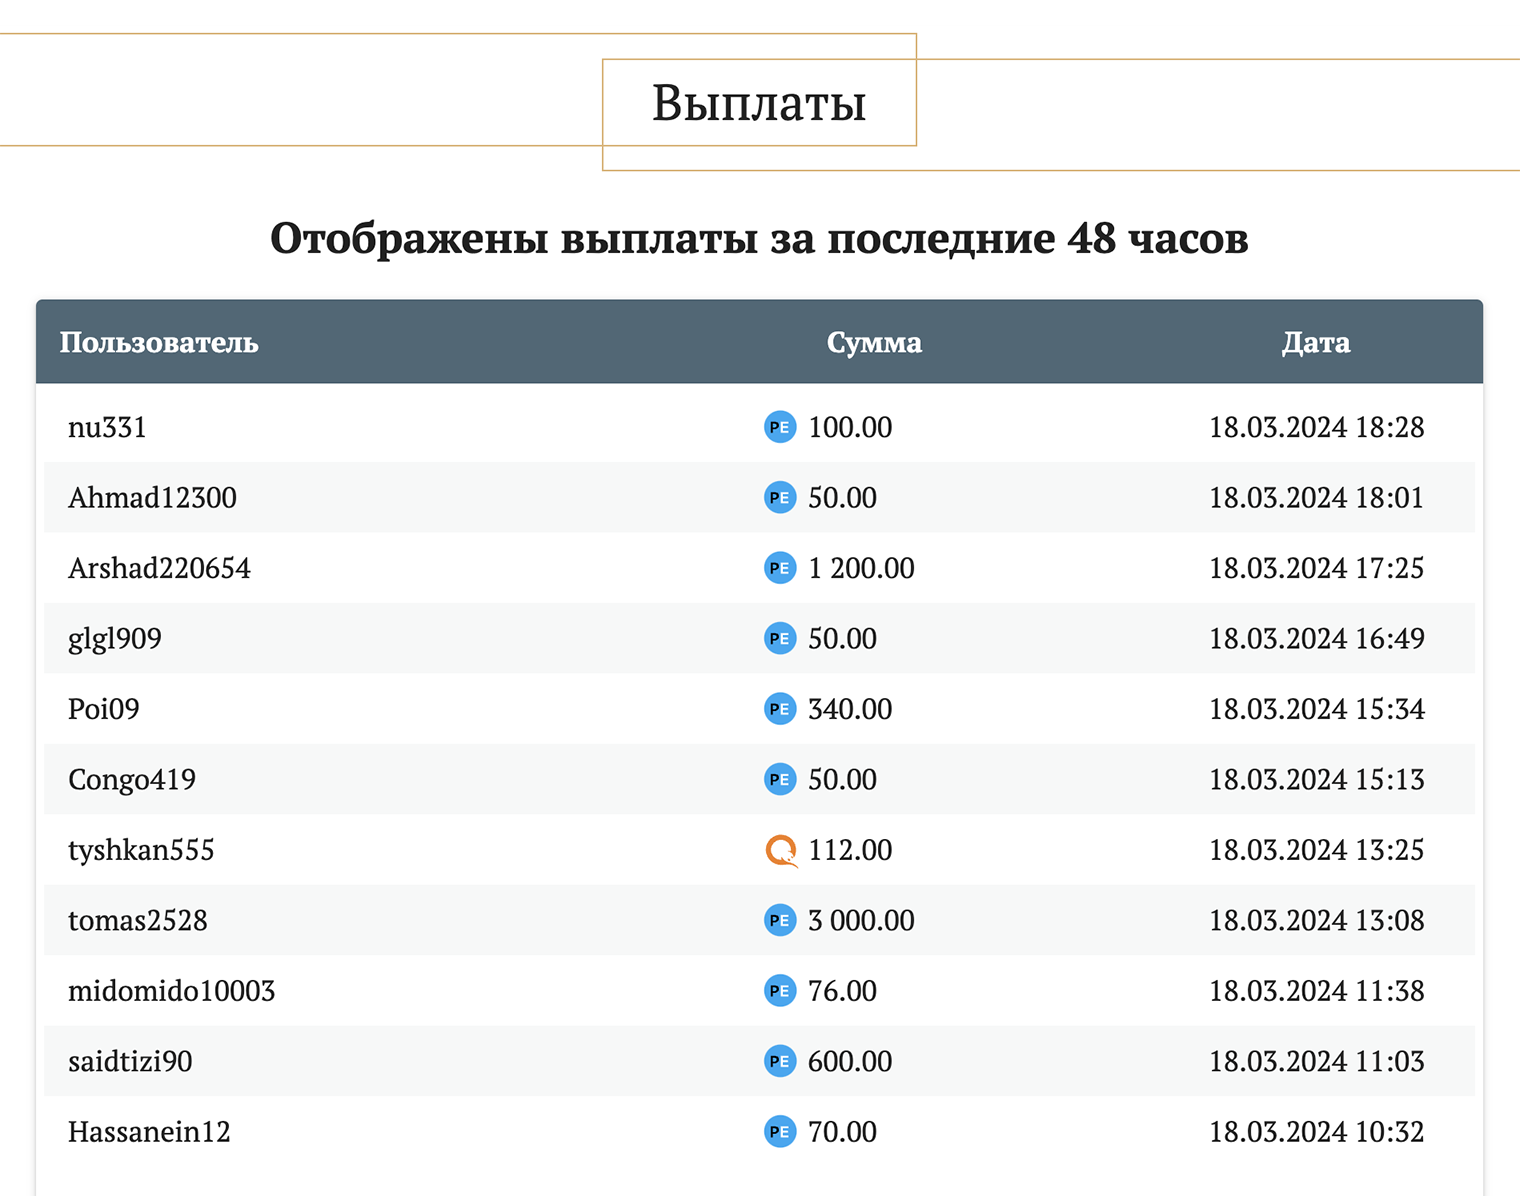 Помните заявление про то, что Money Banks выплатил игрокам 19 млн рублей, а в резерве у него еще 29 млн? Странно при таких суммах видеть какие⁠-⁠то копейки в разделе последних выплат